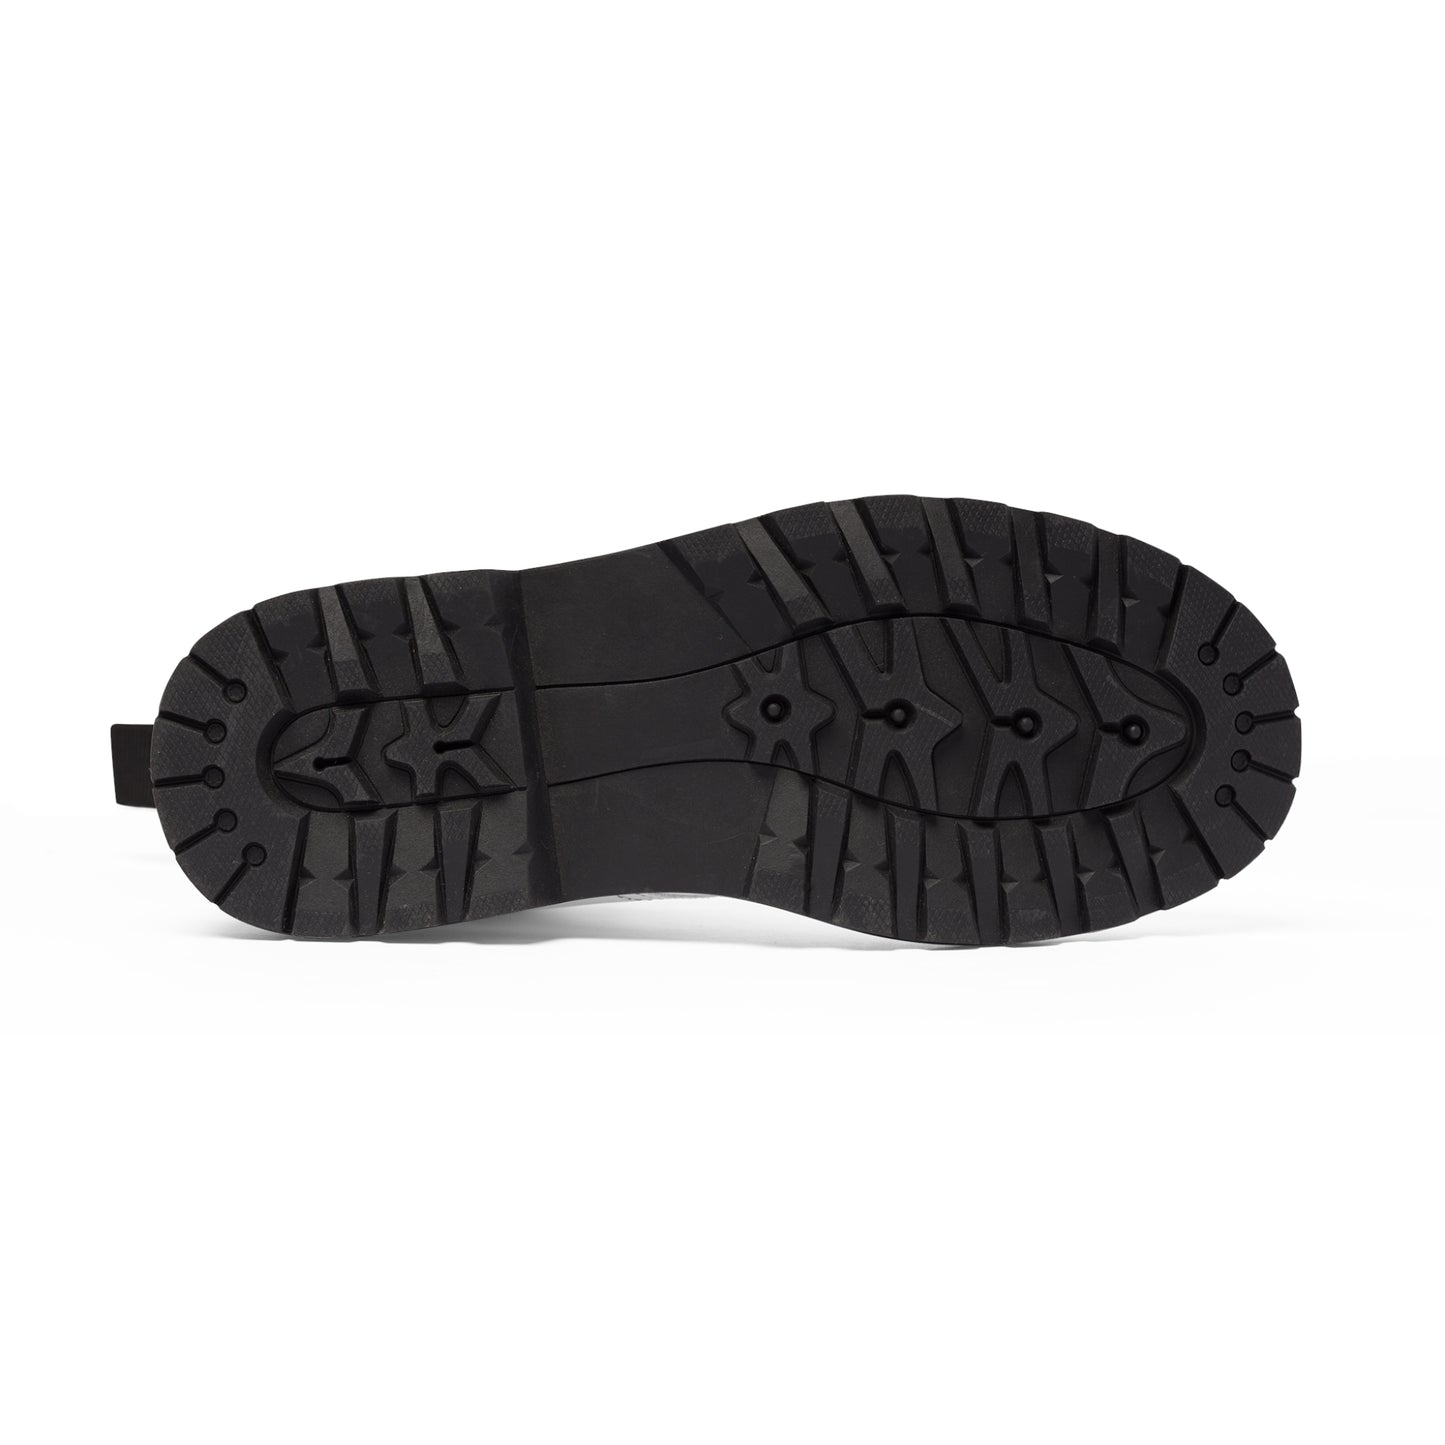 Men's Canvas Boots - 02865 US 10.5 Black sole